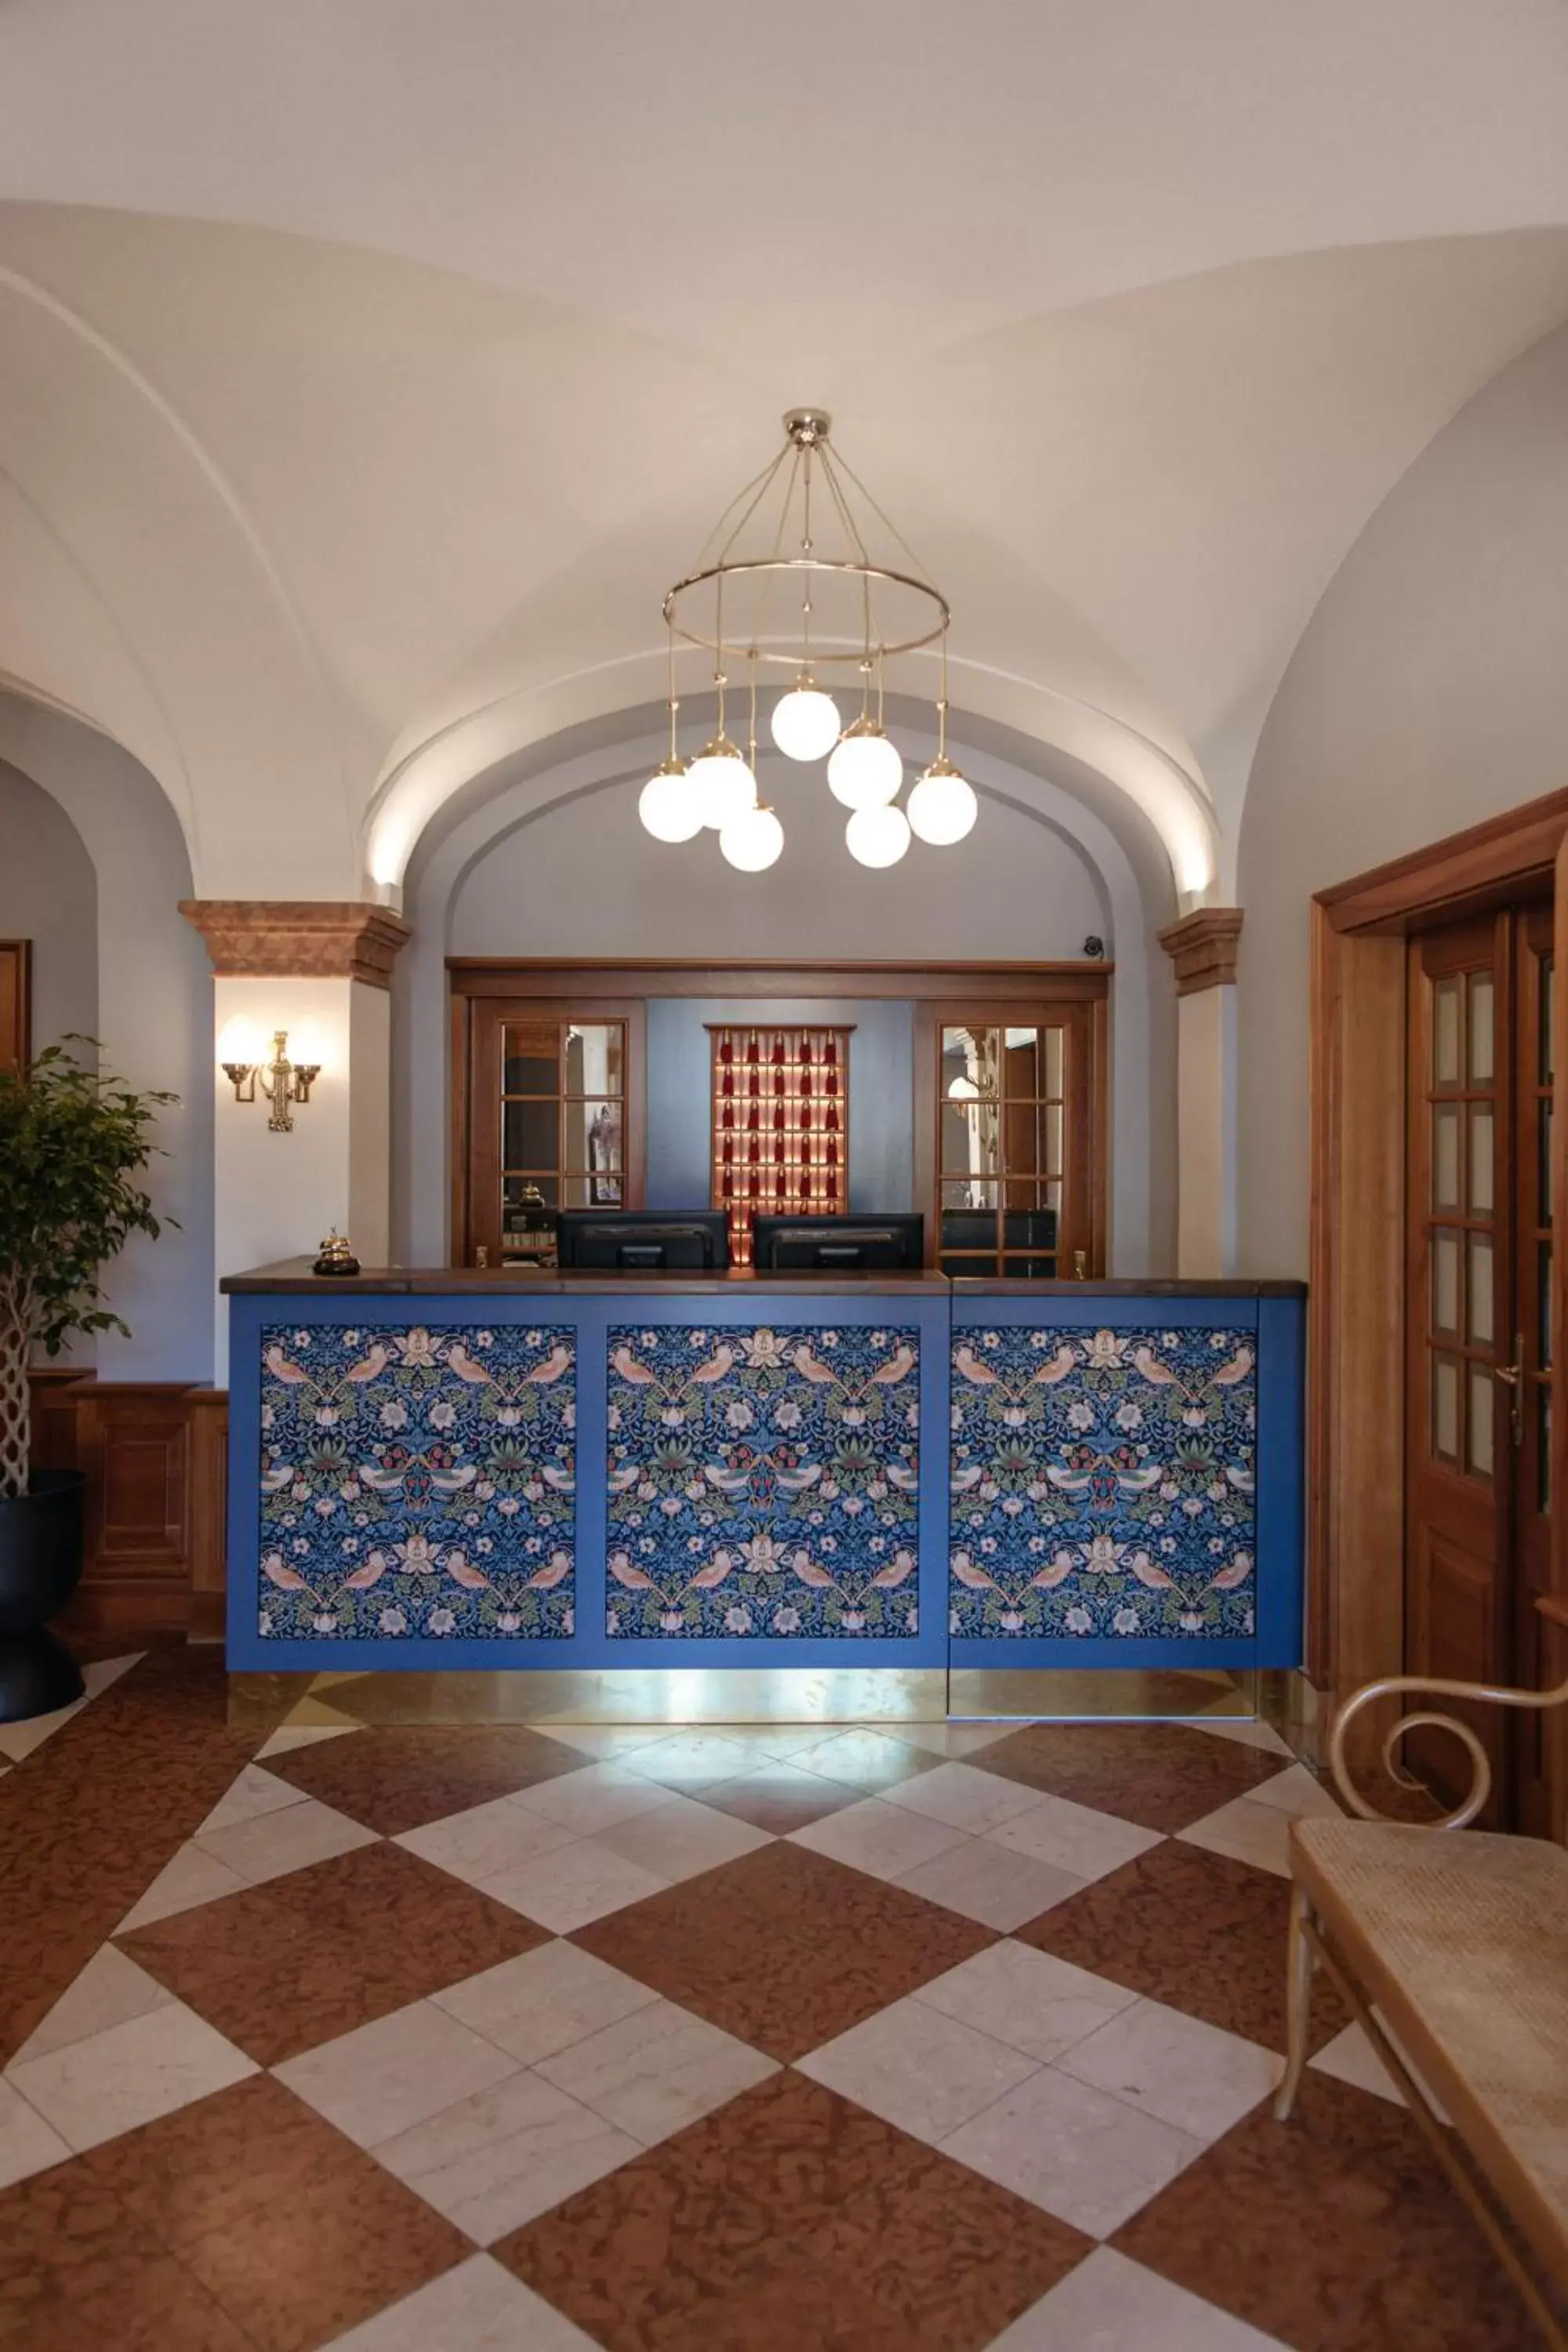 Lobby or reception, Lobby/Reception in Hotel Goldener Ochs